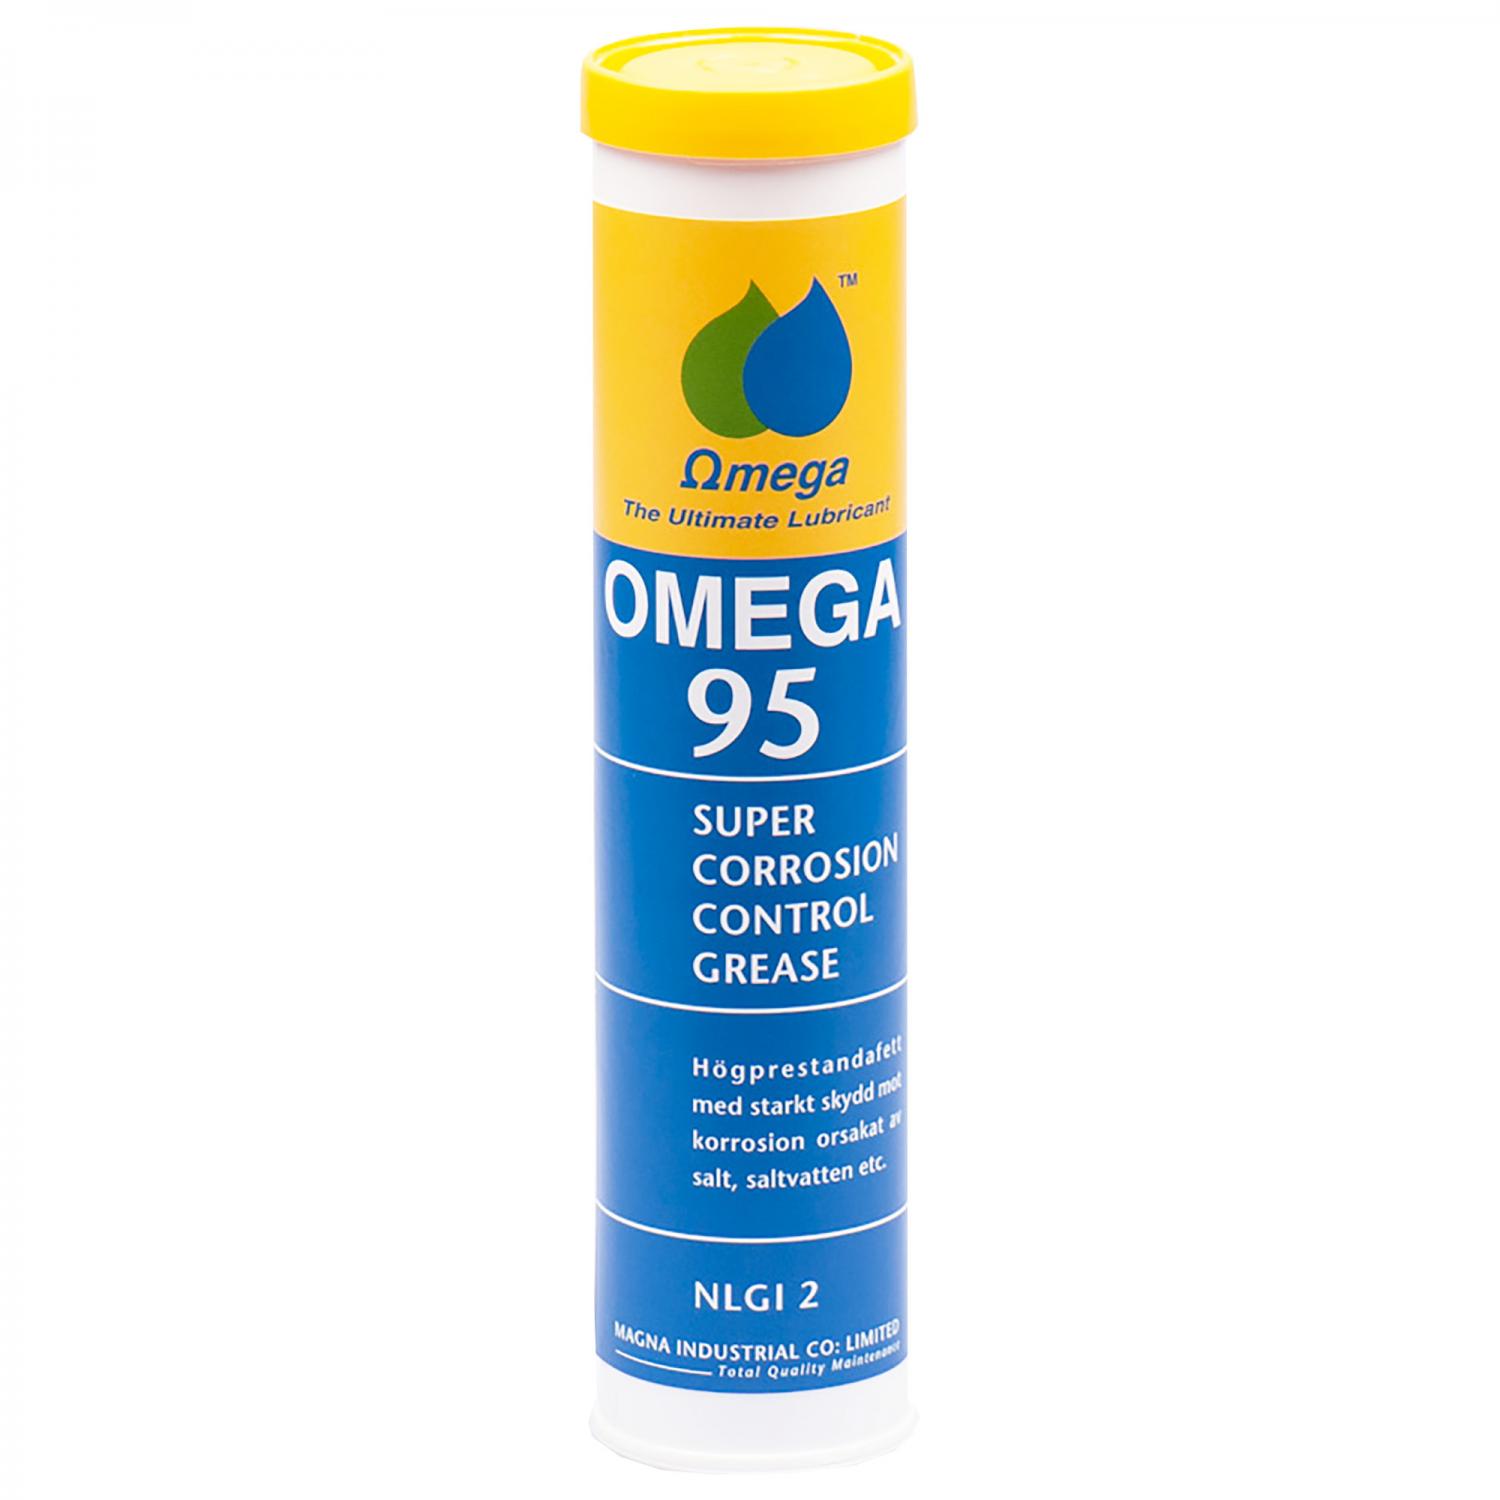 Omega 95 MARINFETT "Offshore" 400GR